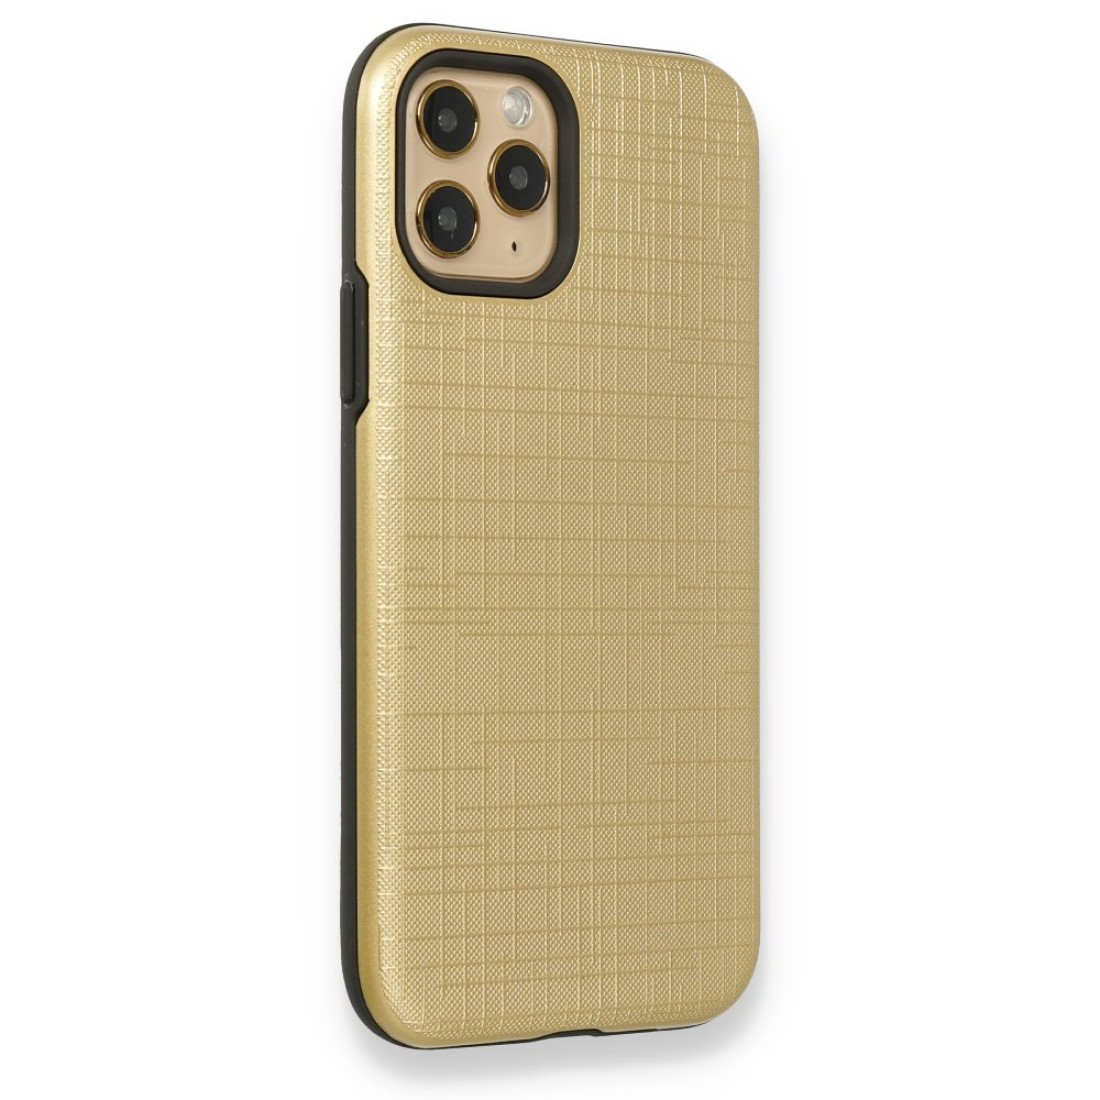 Apple iPhone 11 Pro Kılıf YouYou Silikon Kapak - Gold